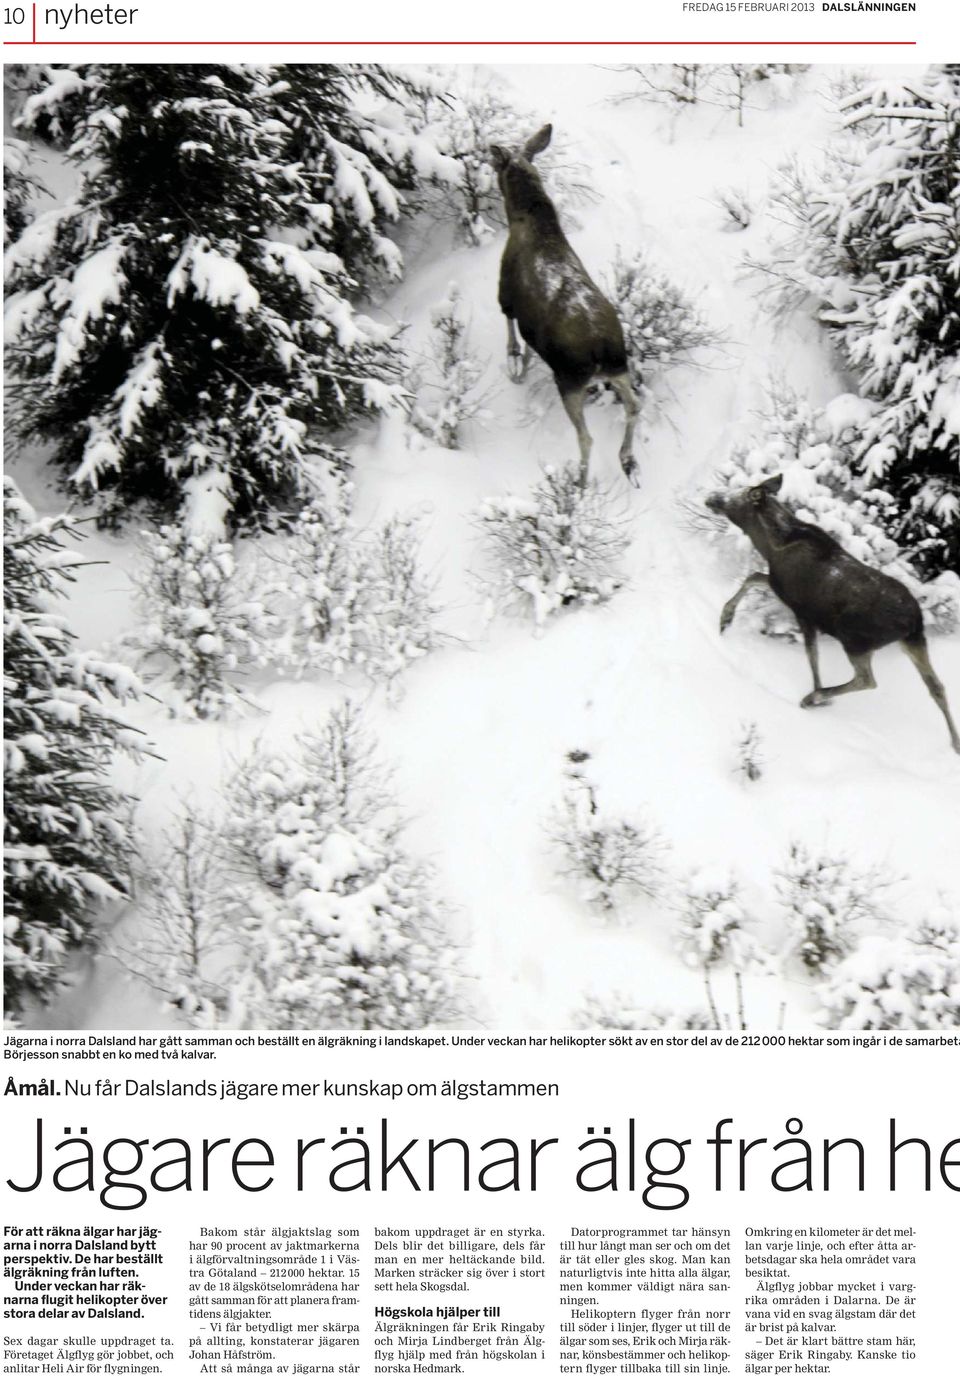 Nu får Dalslands jägare mer kunskap om älgstammen Jägare räknar älg från he För att räkna älgar har jägarna i norra Dalsland bytt perspektiv. De har beställt älgräkning från luften.